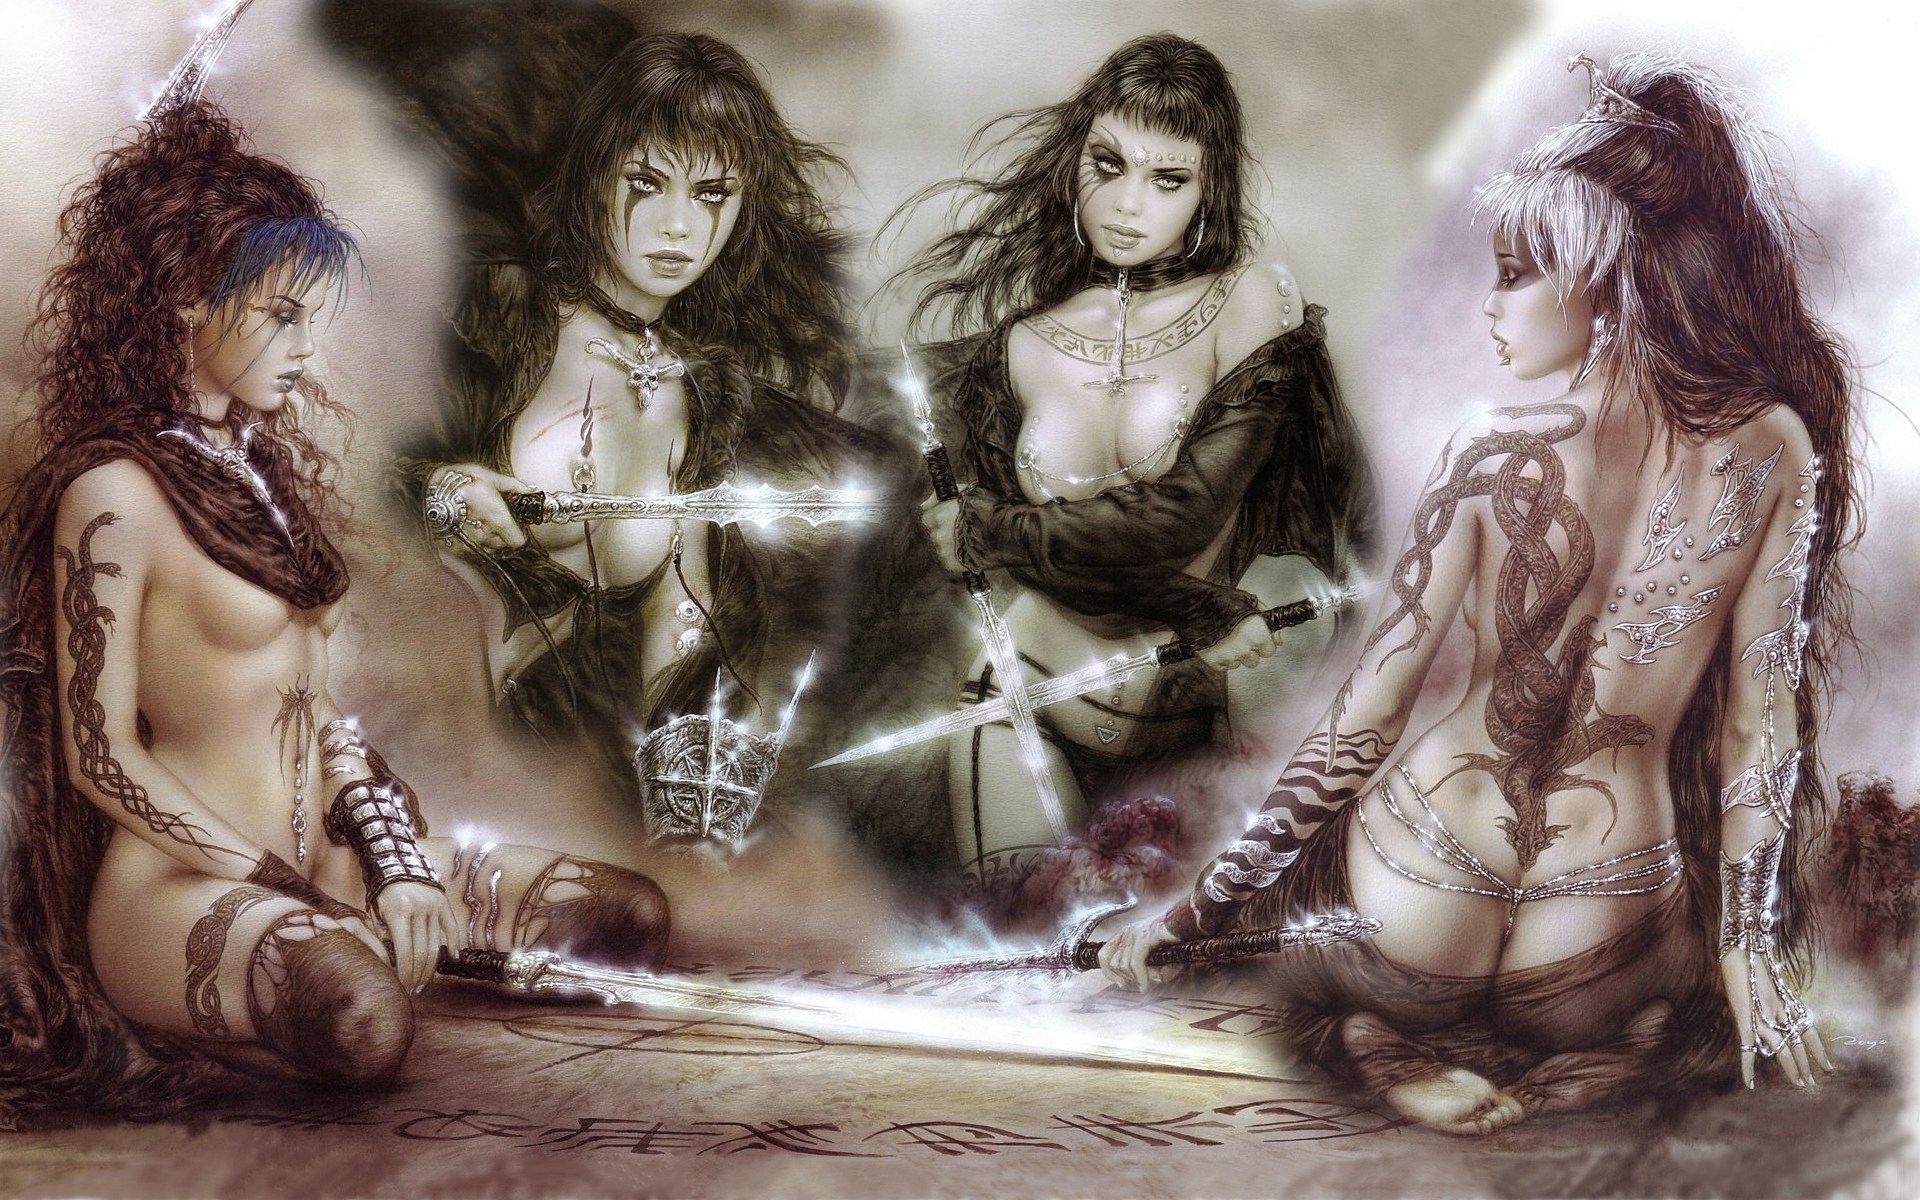 N De Chicas Guerreras De Luis Royotaringa - Luis Royo Female Fantasy Art - HD Wallpaper 